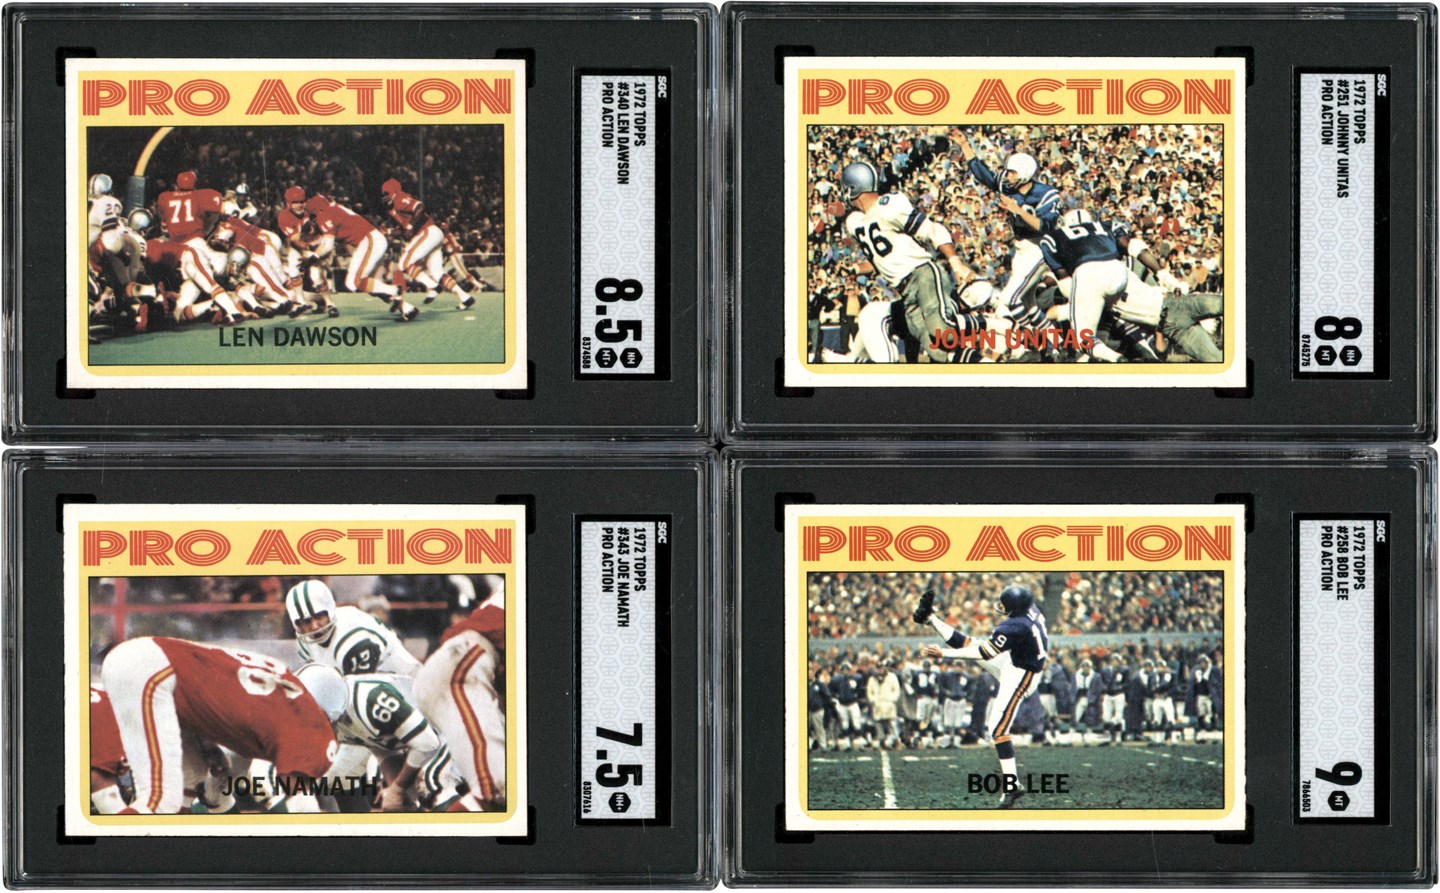 1972 Topps Football High Grade SGC Card Collection (7) with Namath & Unitas